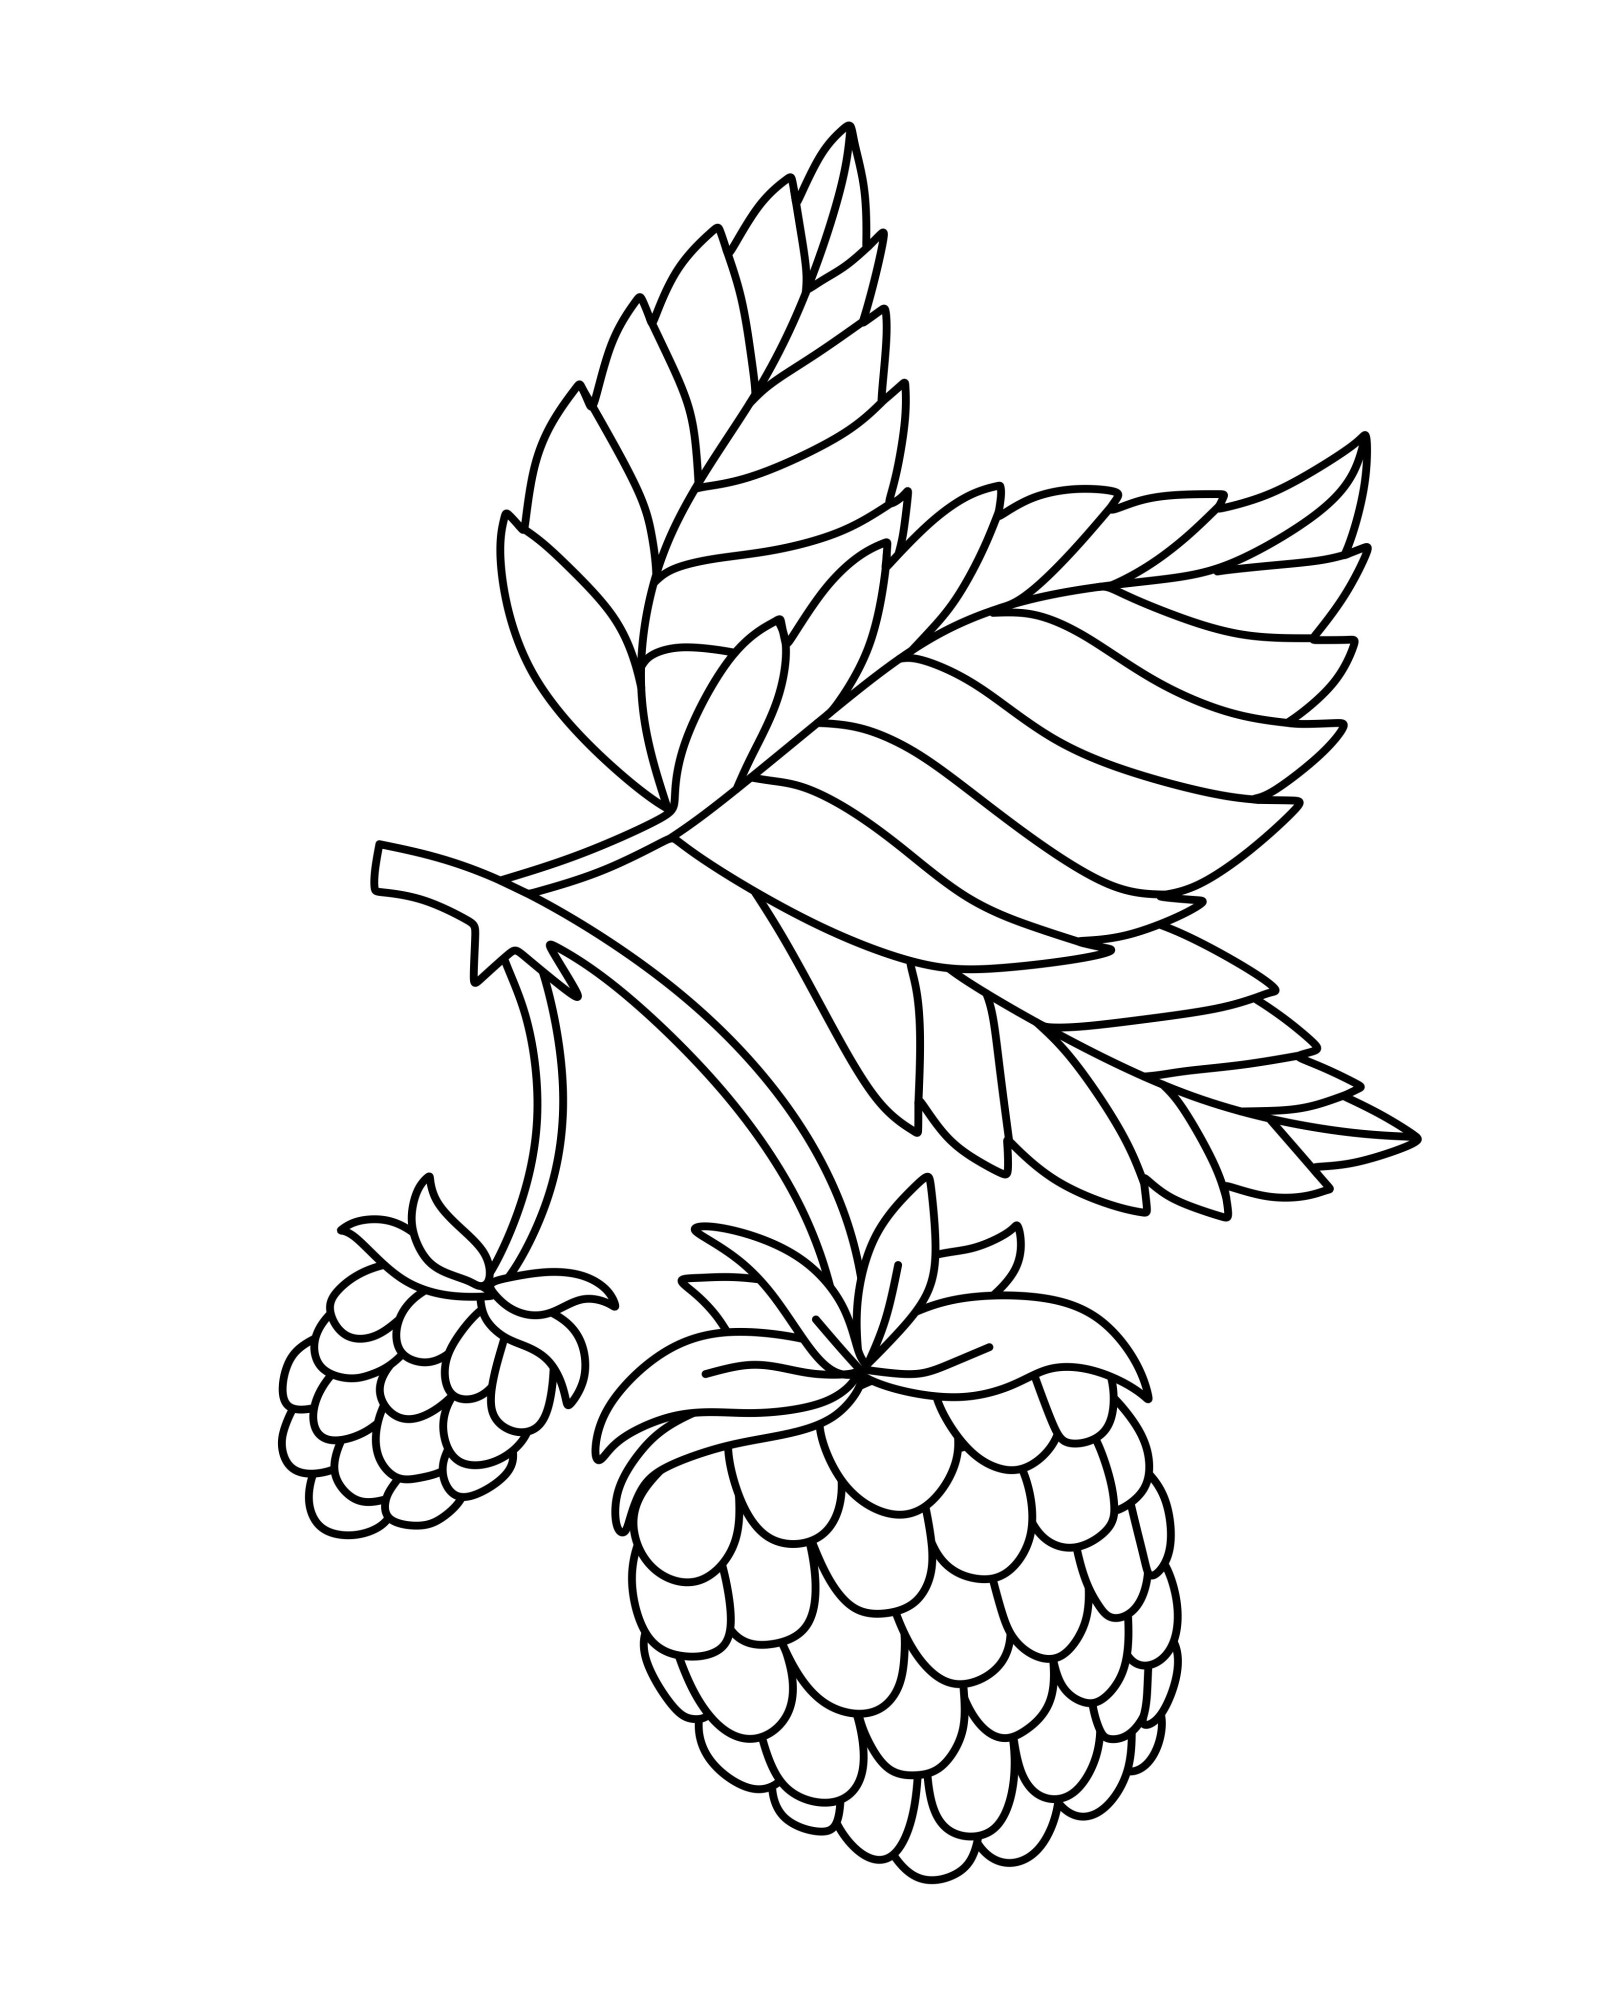 Раскраска для детей: две ягоды малины на ветке с листьями